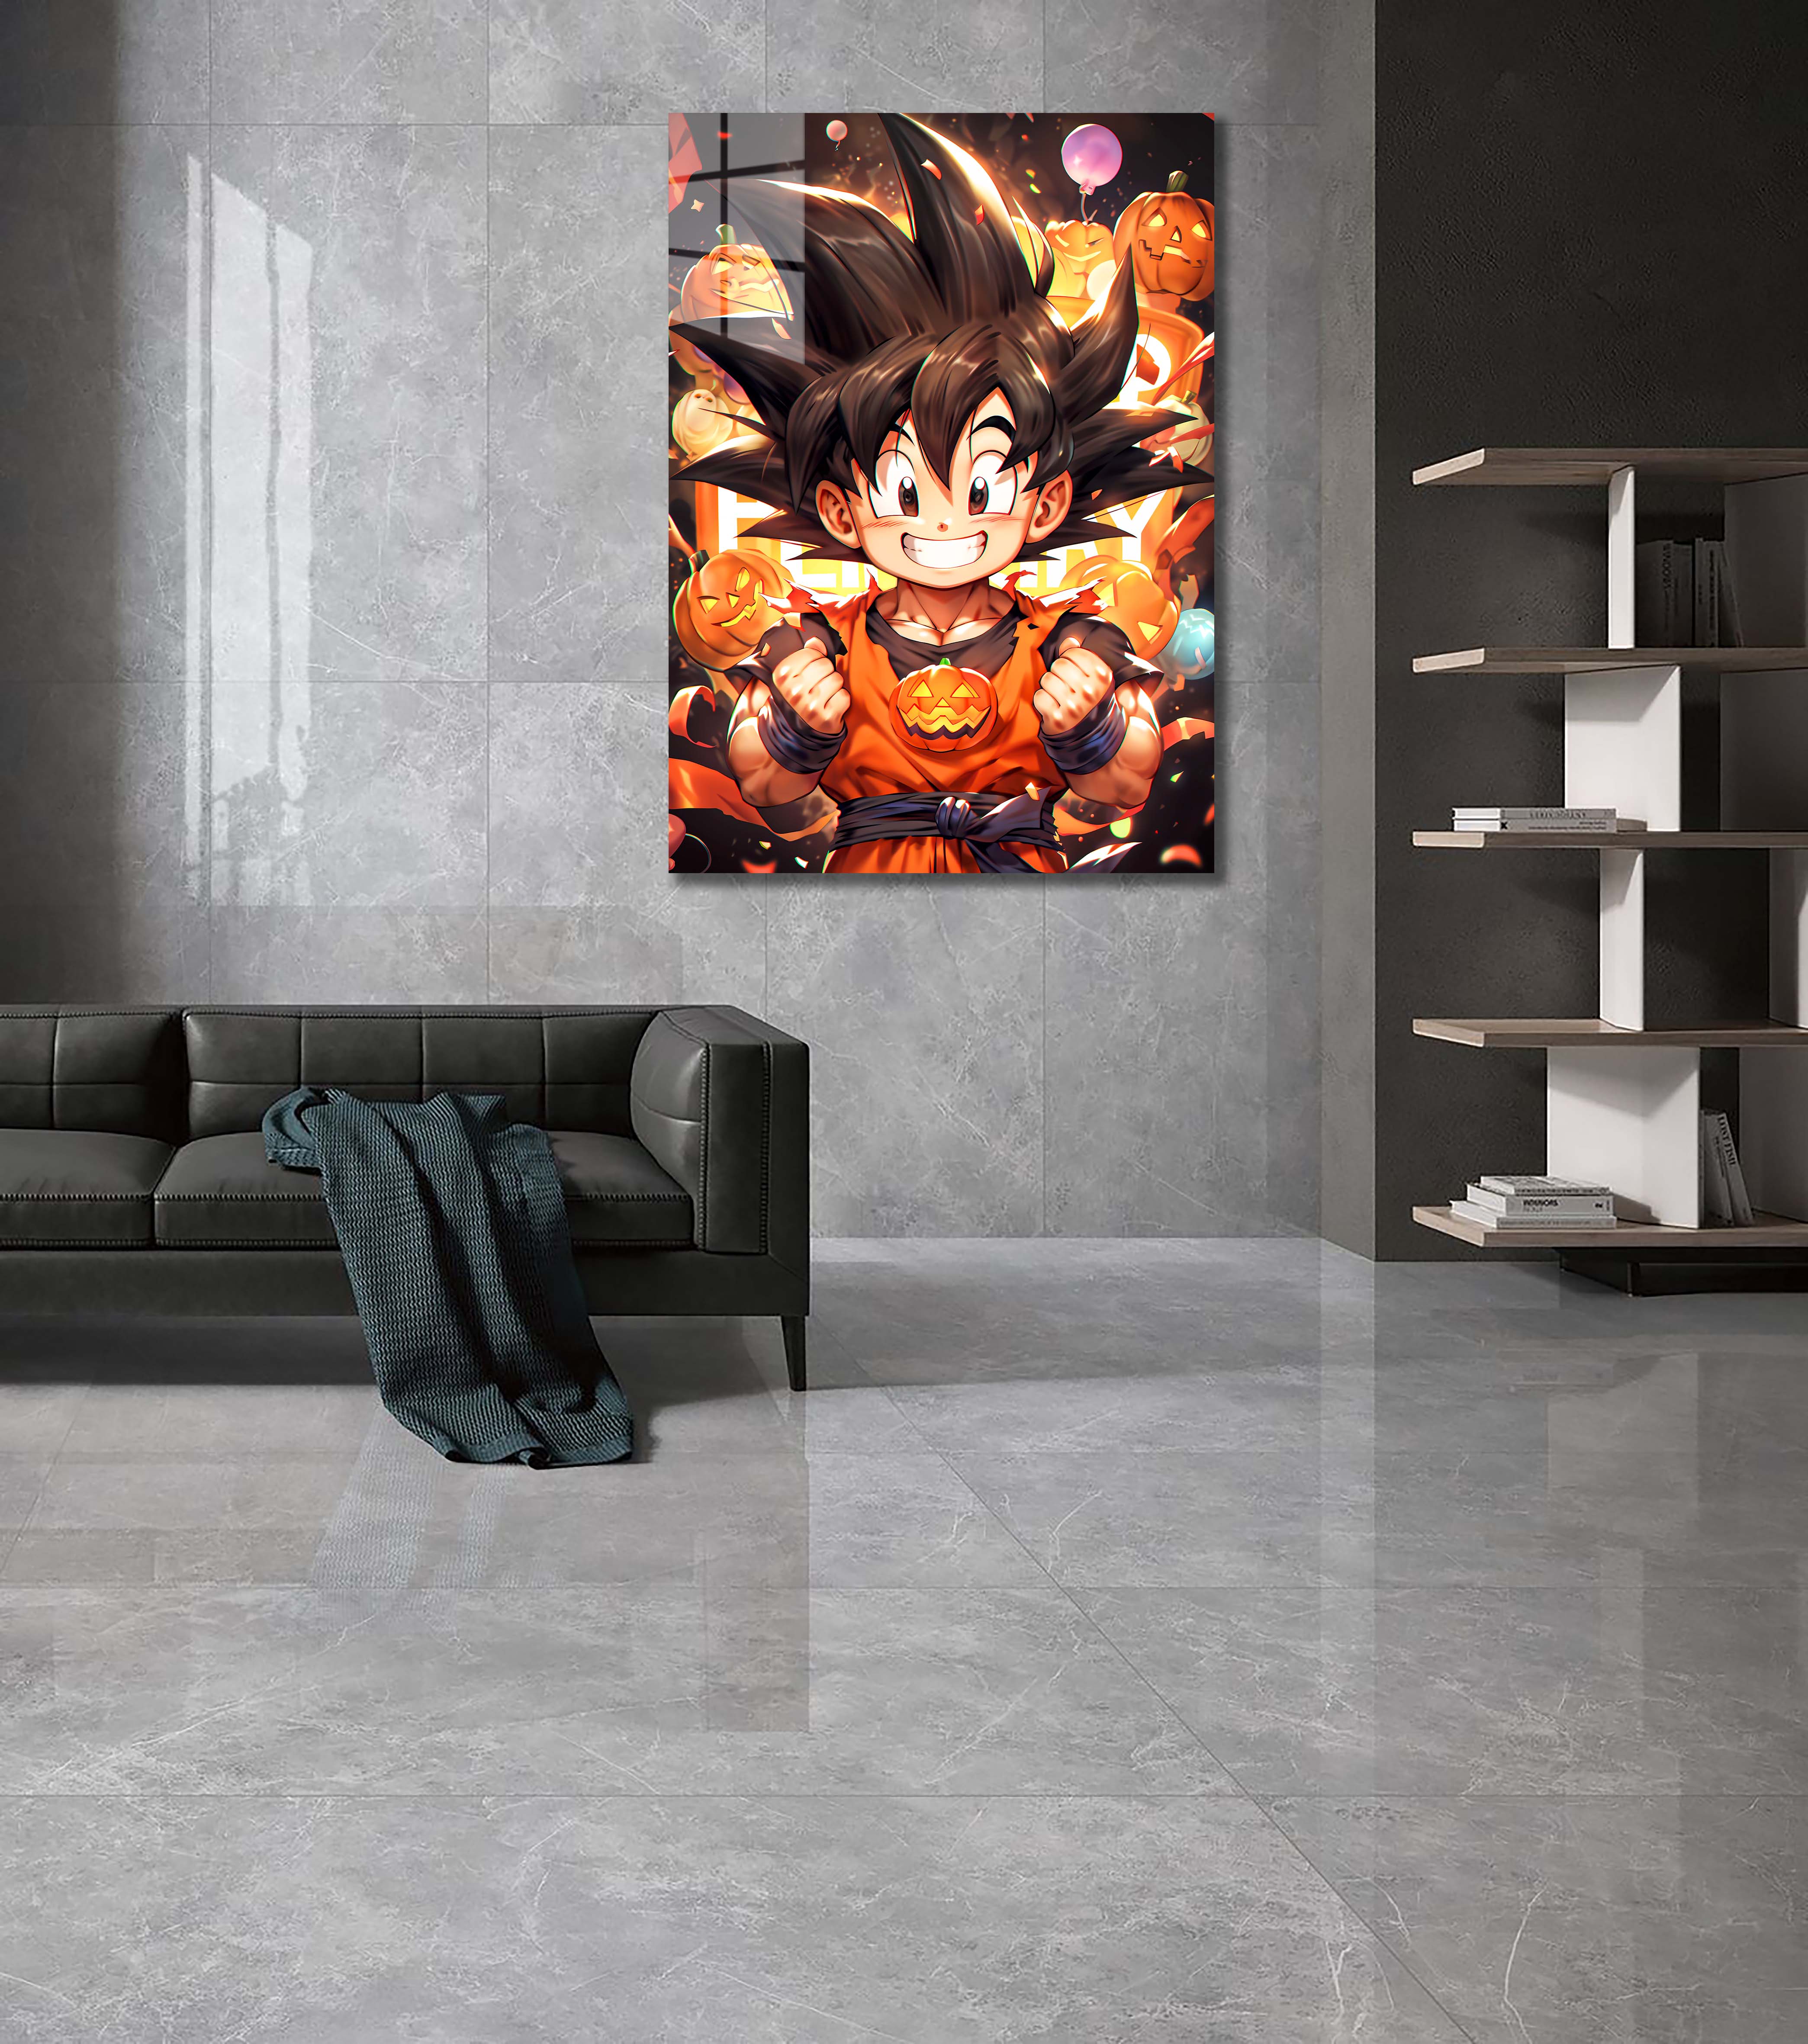 🎃Halloween Kid Goku-designed by @Freiart_mjr